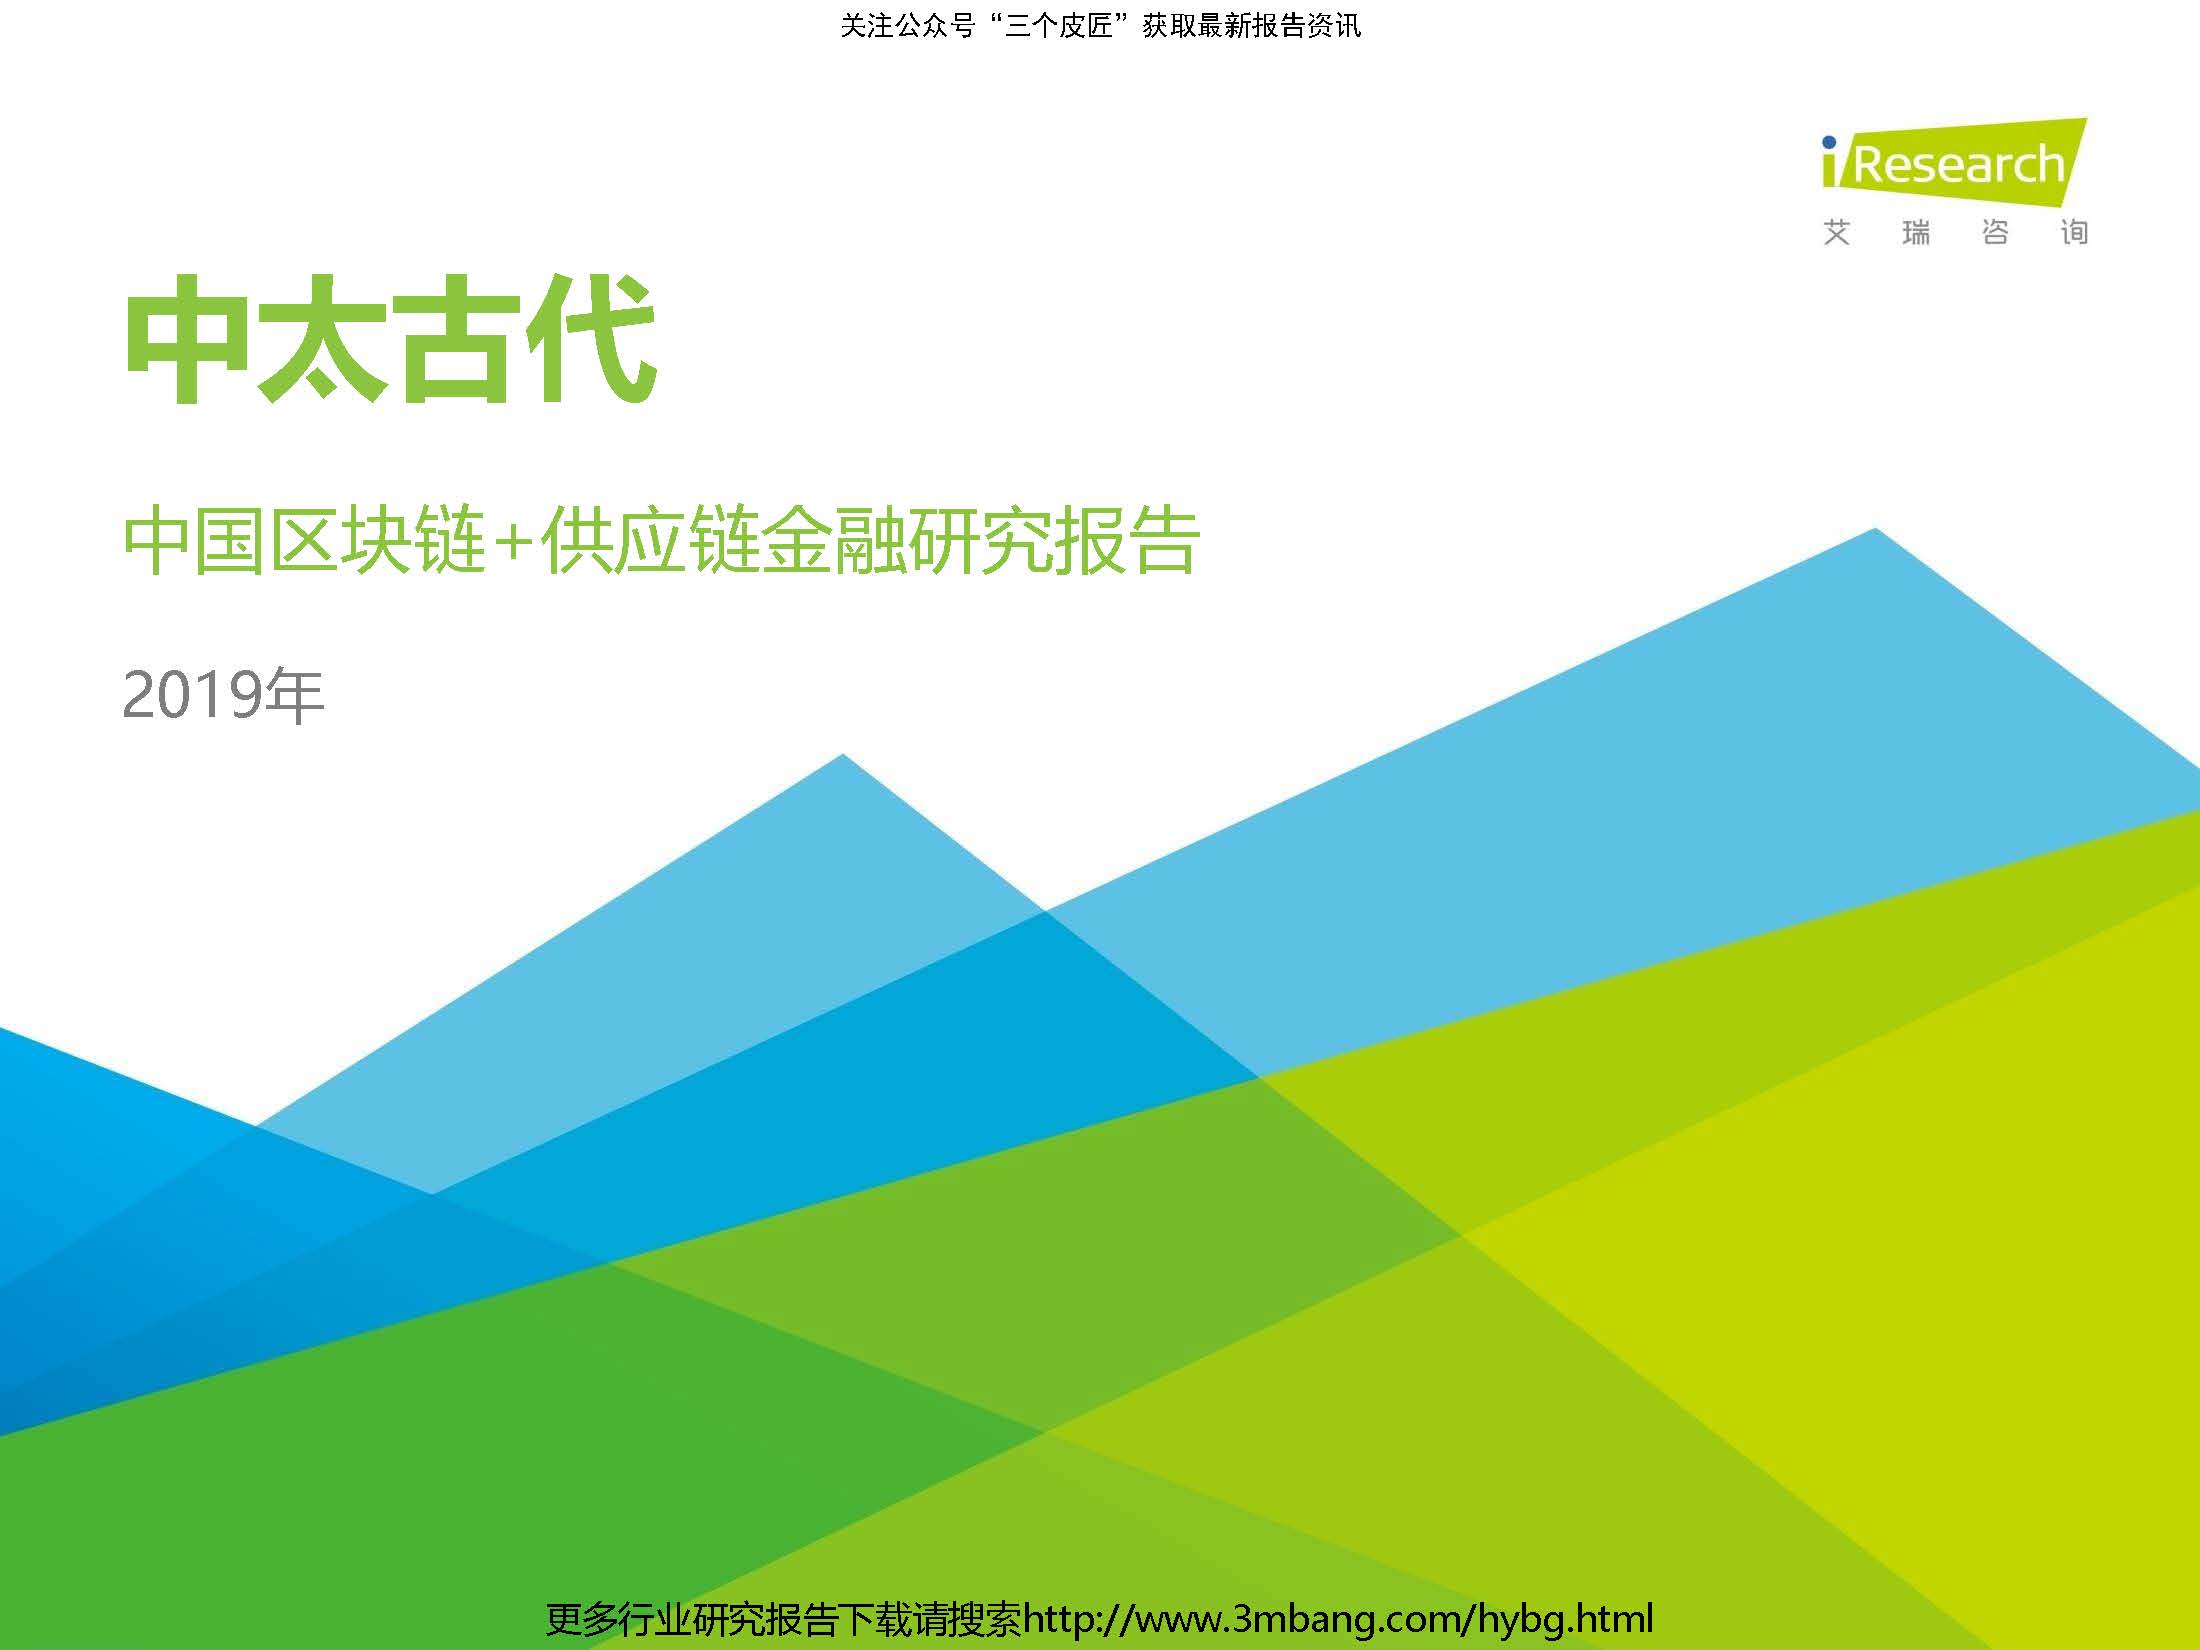 艾瑞：2019年-中太古代-中国区块链+供应链金融研究报告(附下载地址)